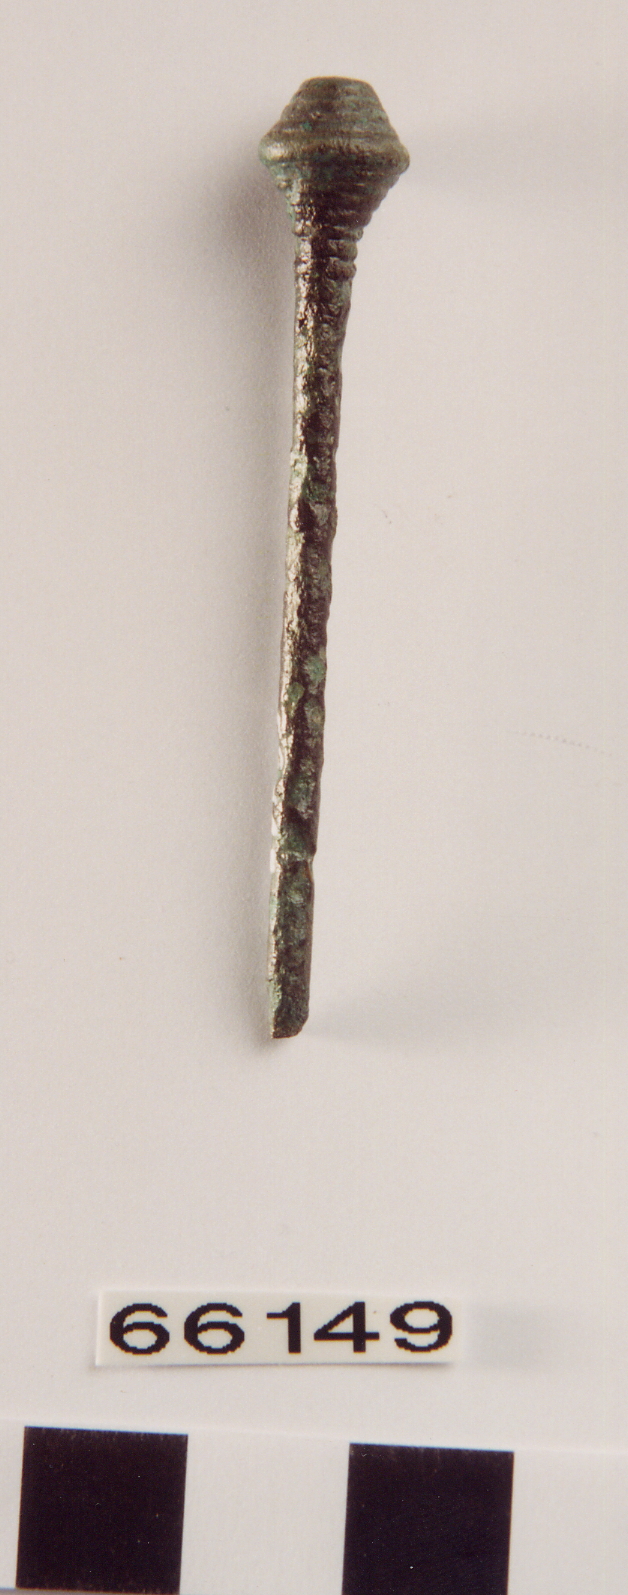 spillone con capocchia biconica, Carancini, tipo MezzoCorona varietà A - ambito terramaricolo (età del Bronzo Recente)